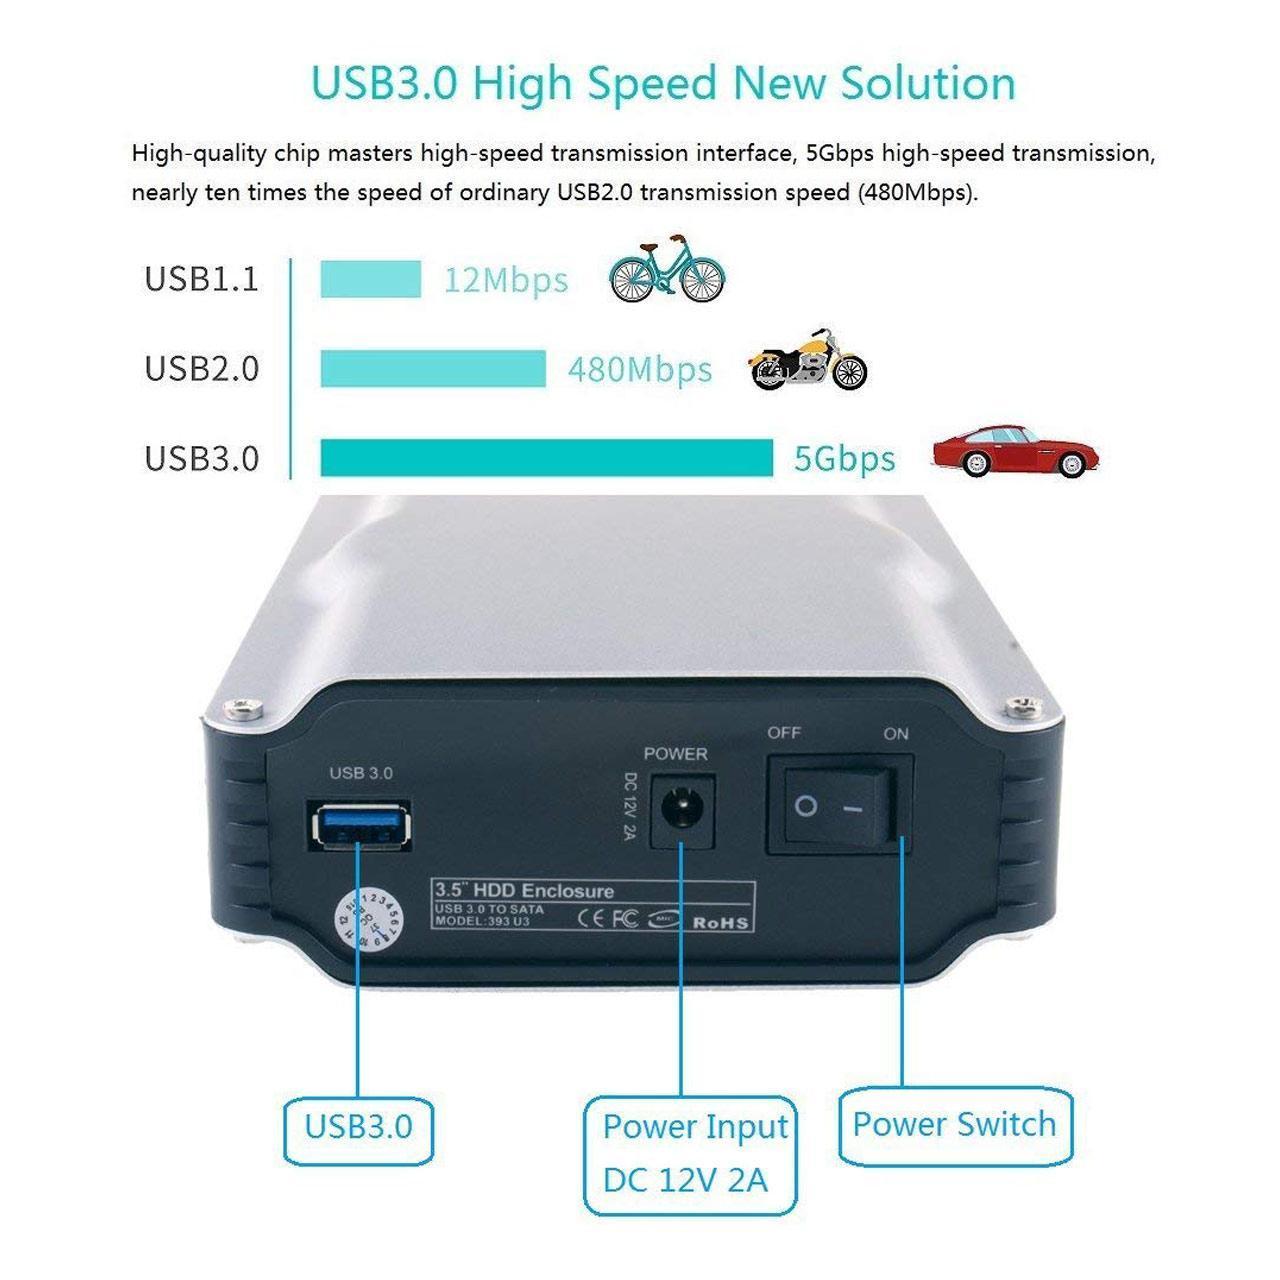 باکس هارد ساتا 3 حرفه ای 3.5 اینچی با سرعت USB 3.0 به همراه فن خنک کننده